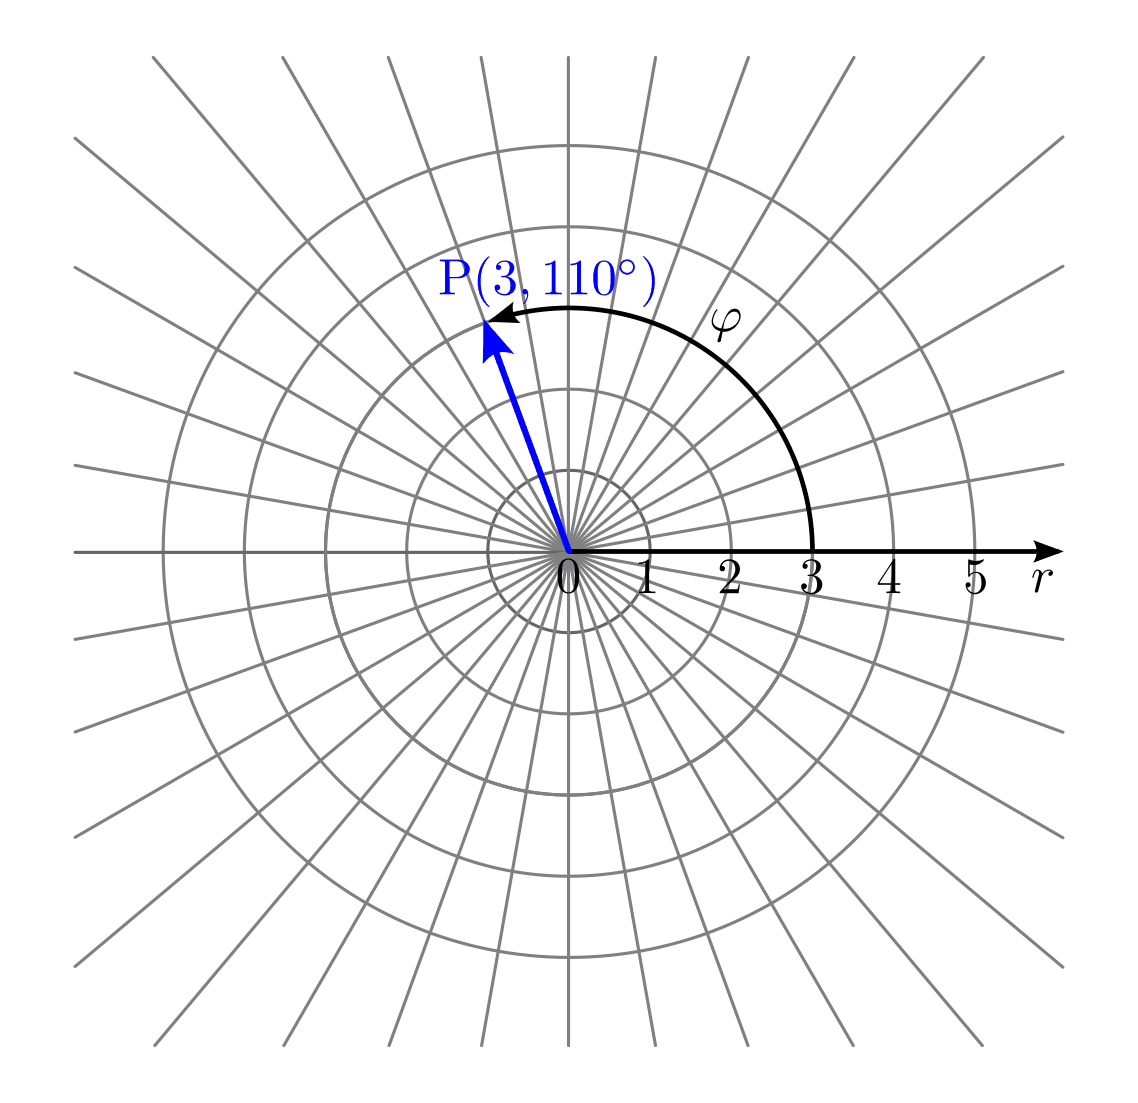 fig-koordinatensystem-polar